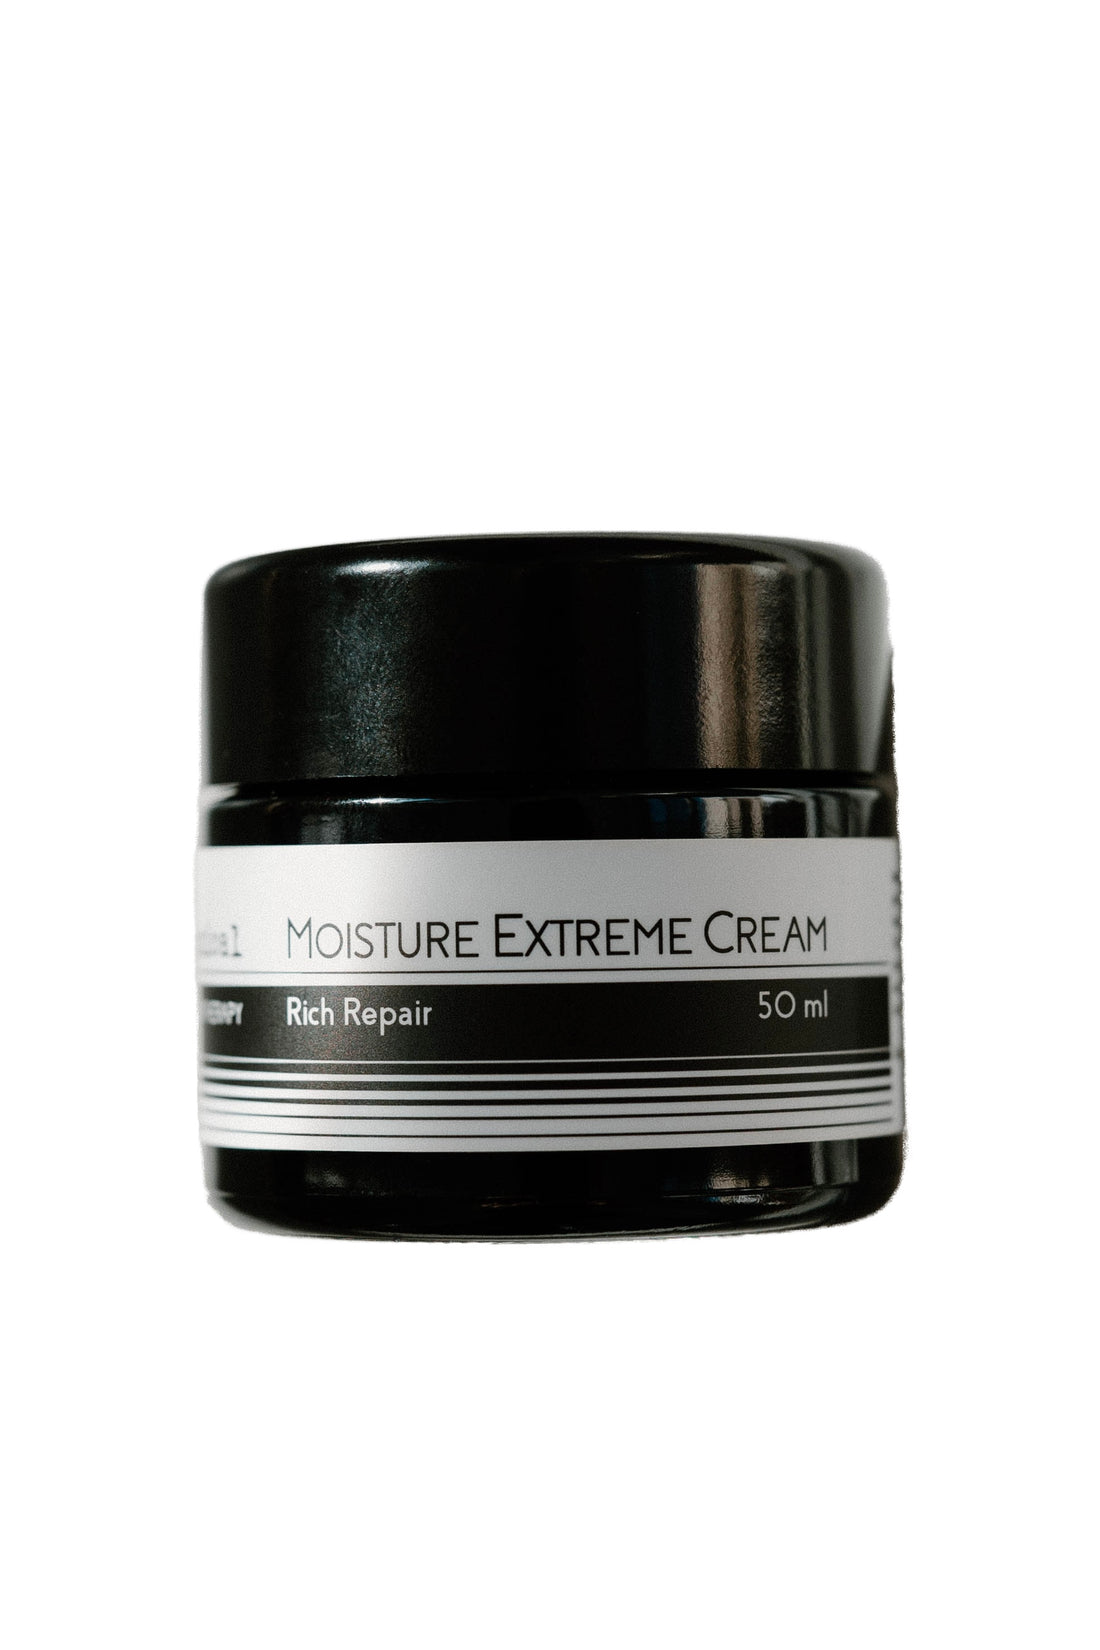 Moisture Extreme Cream